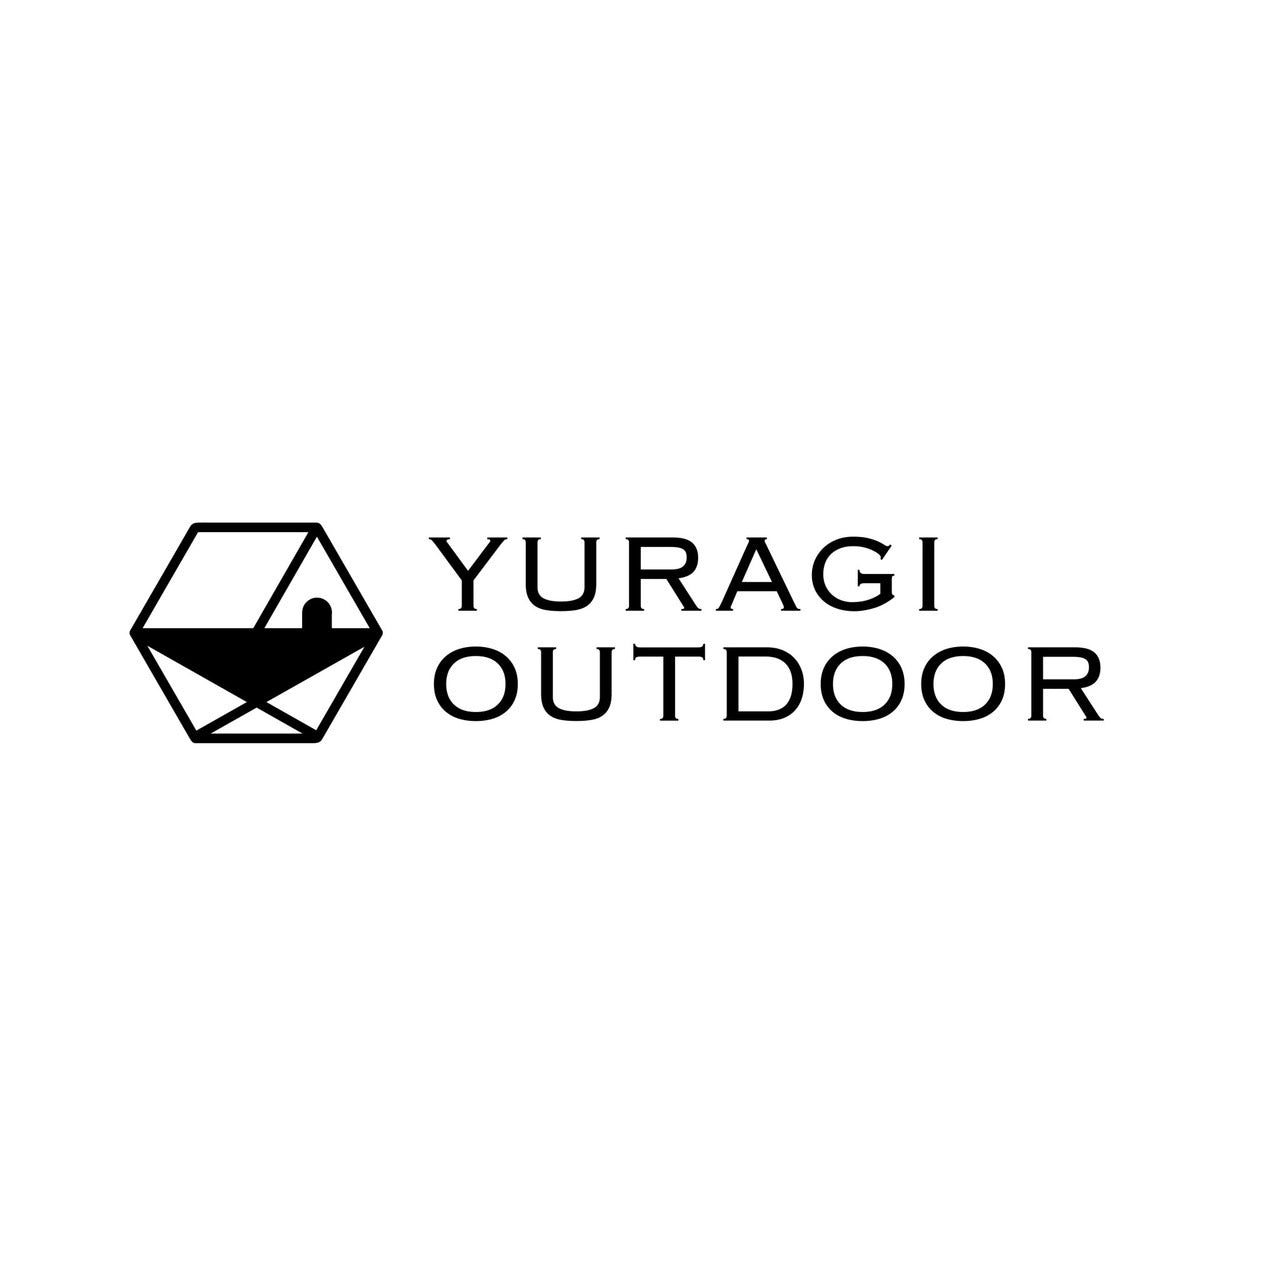 今年の夏には開業したい「YURAGI OUTDOOR」の実店舗について